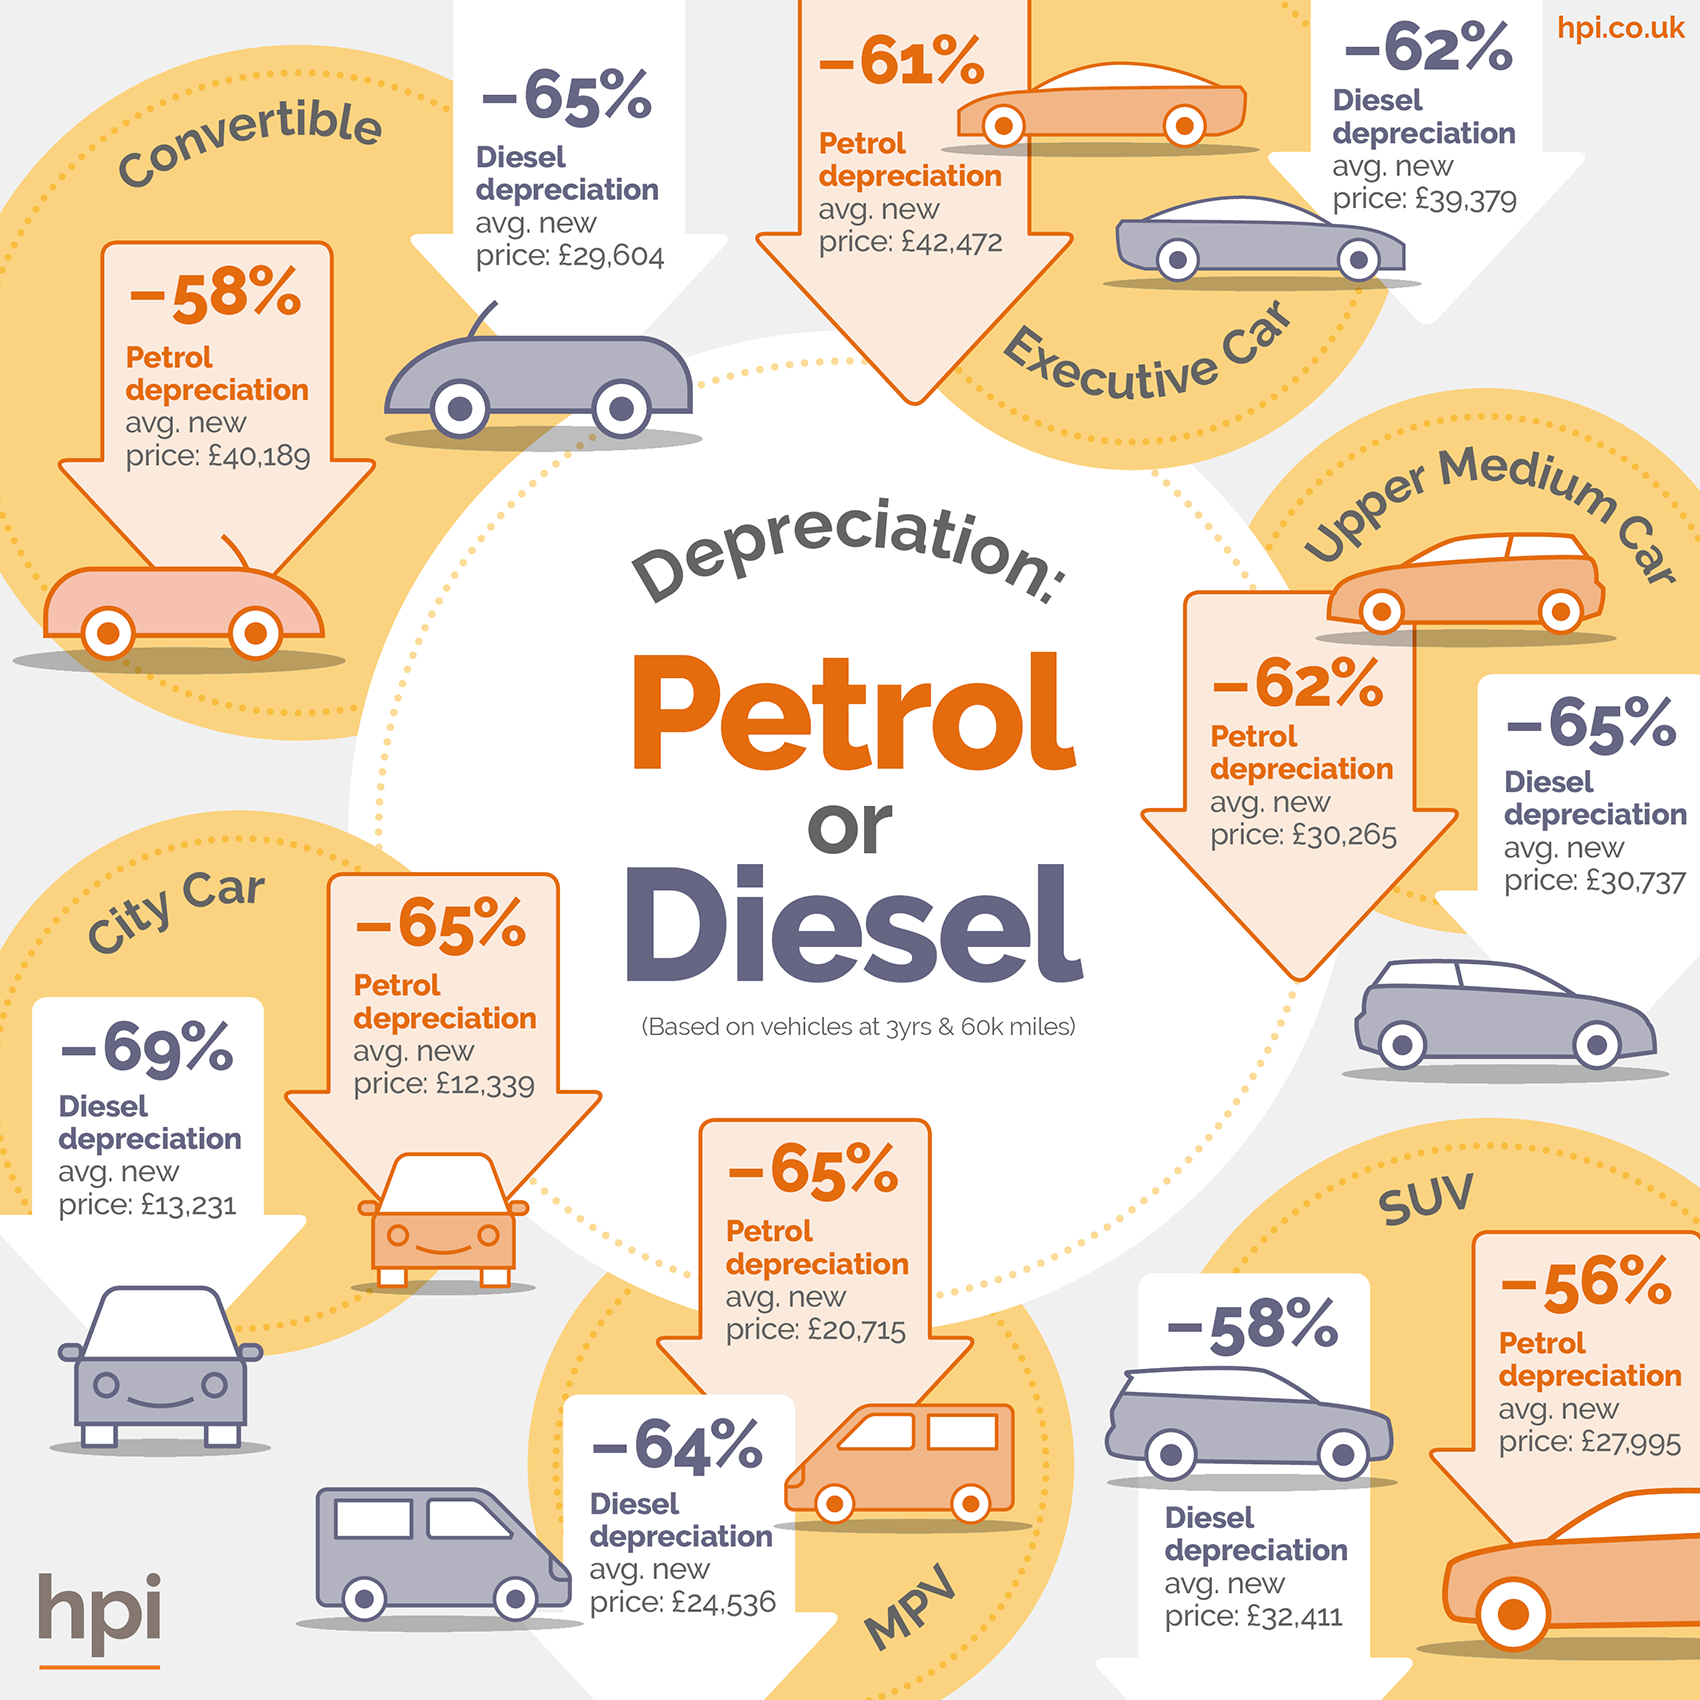 Petrol or diesel, vehicle depreciation, future of diesel, 